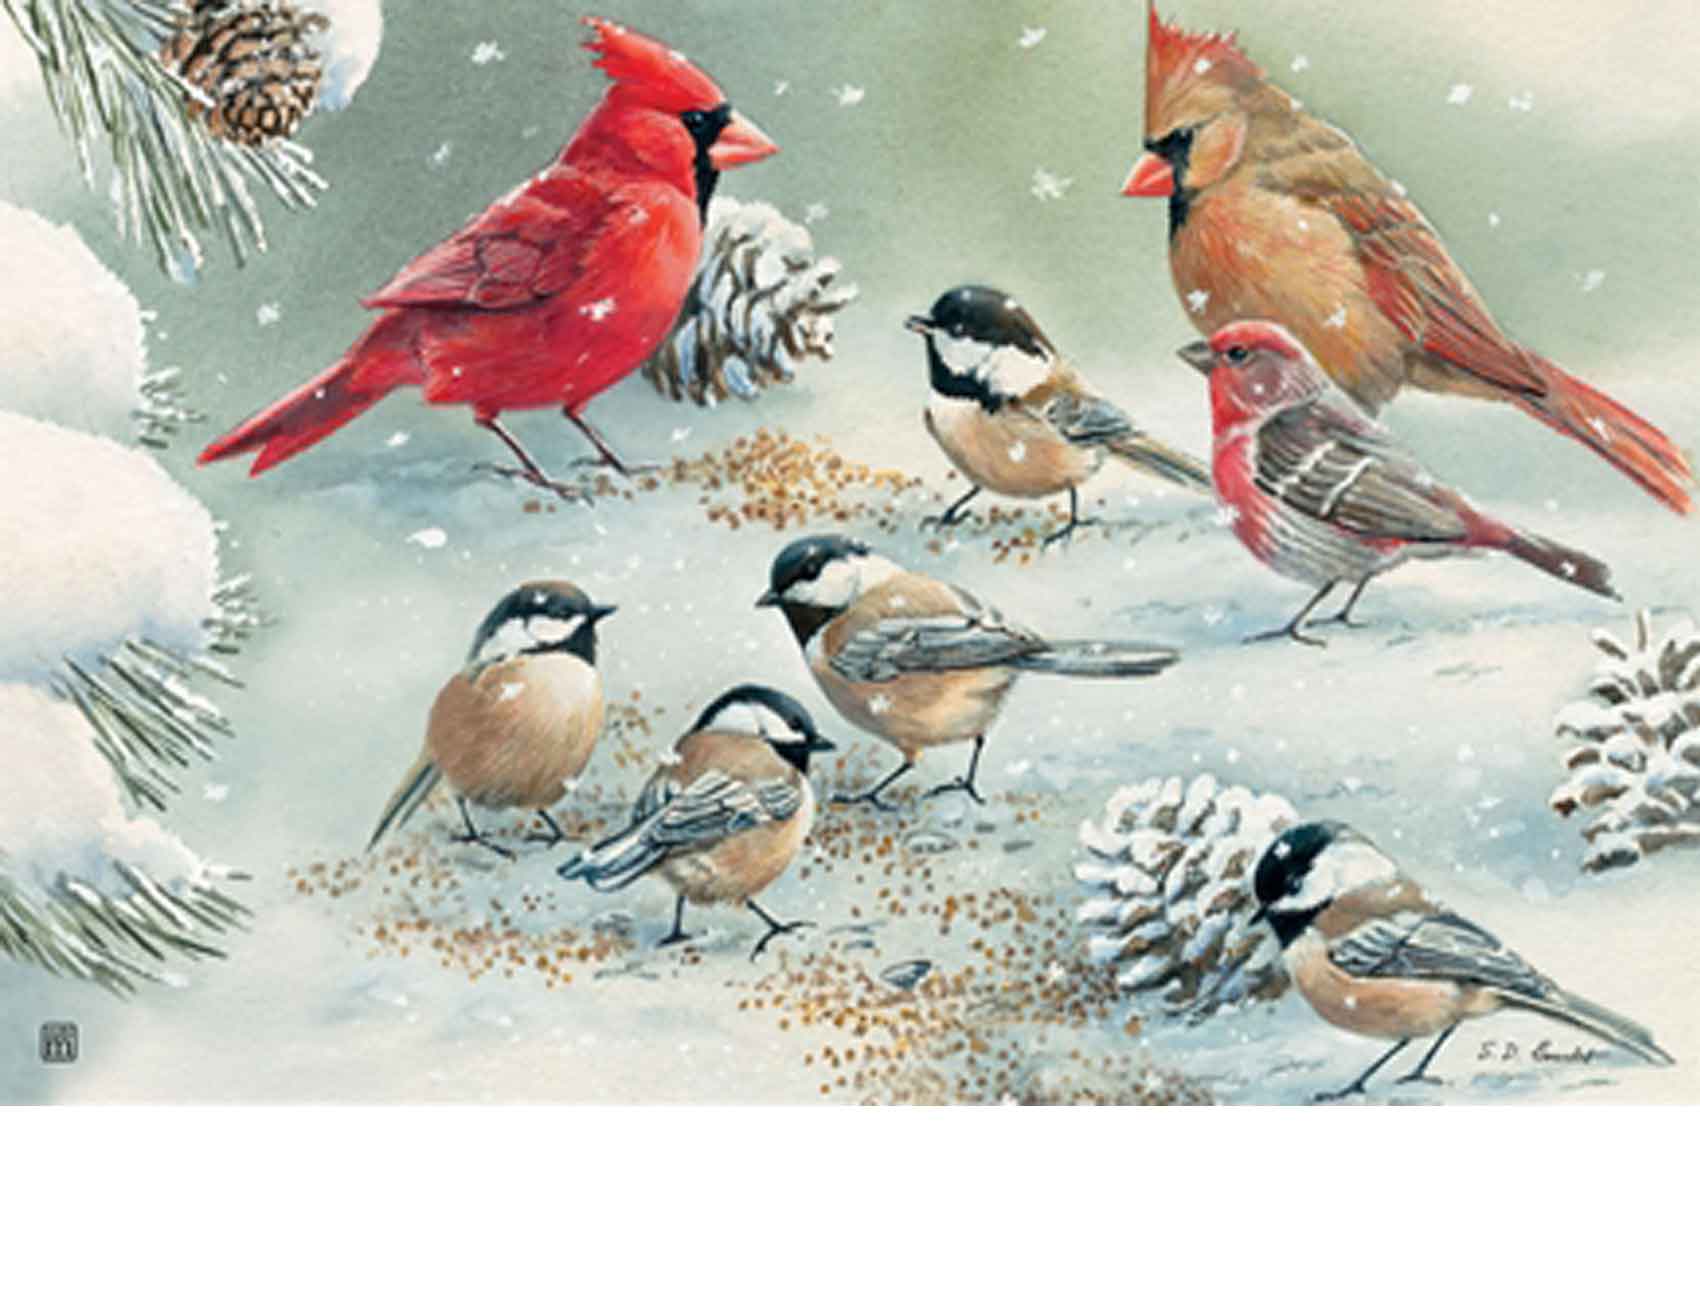 Winter Animals Doormat, Winter Birds and Fox Door Mat